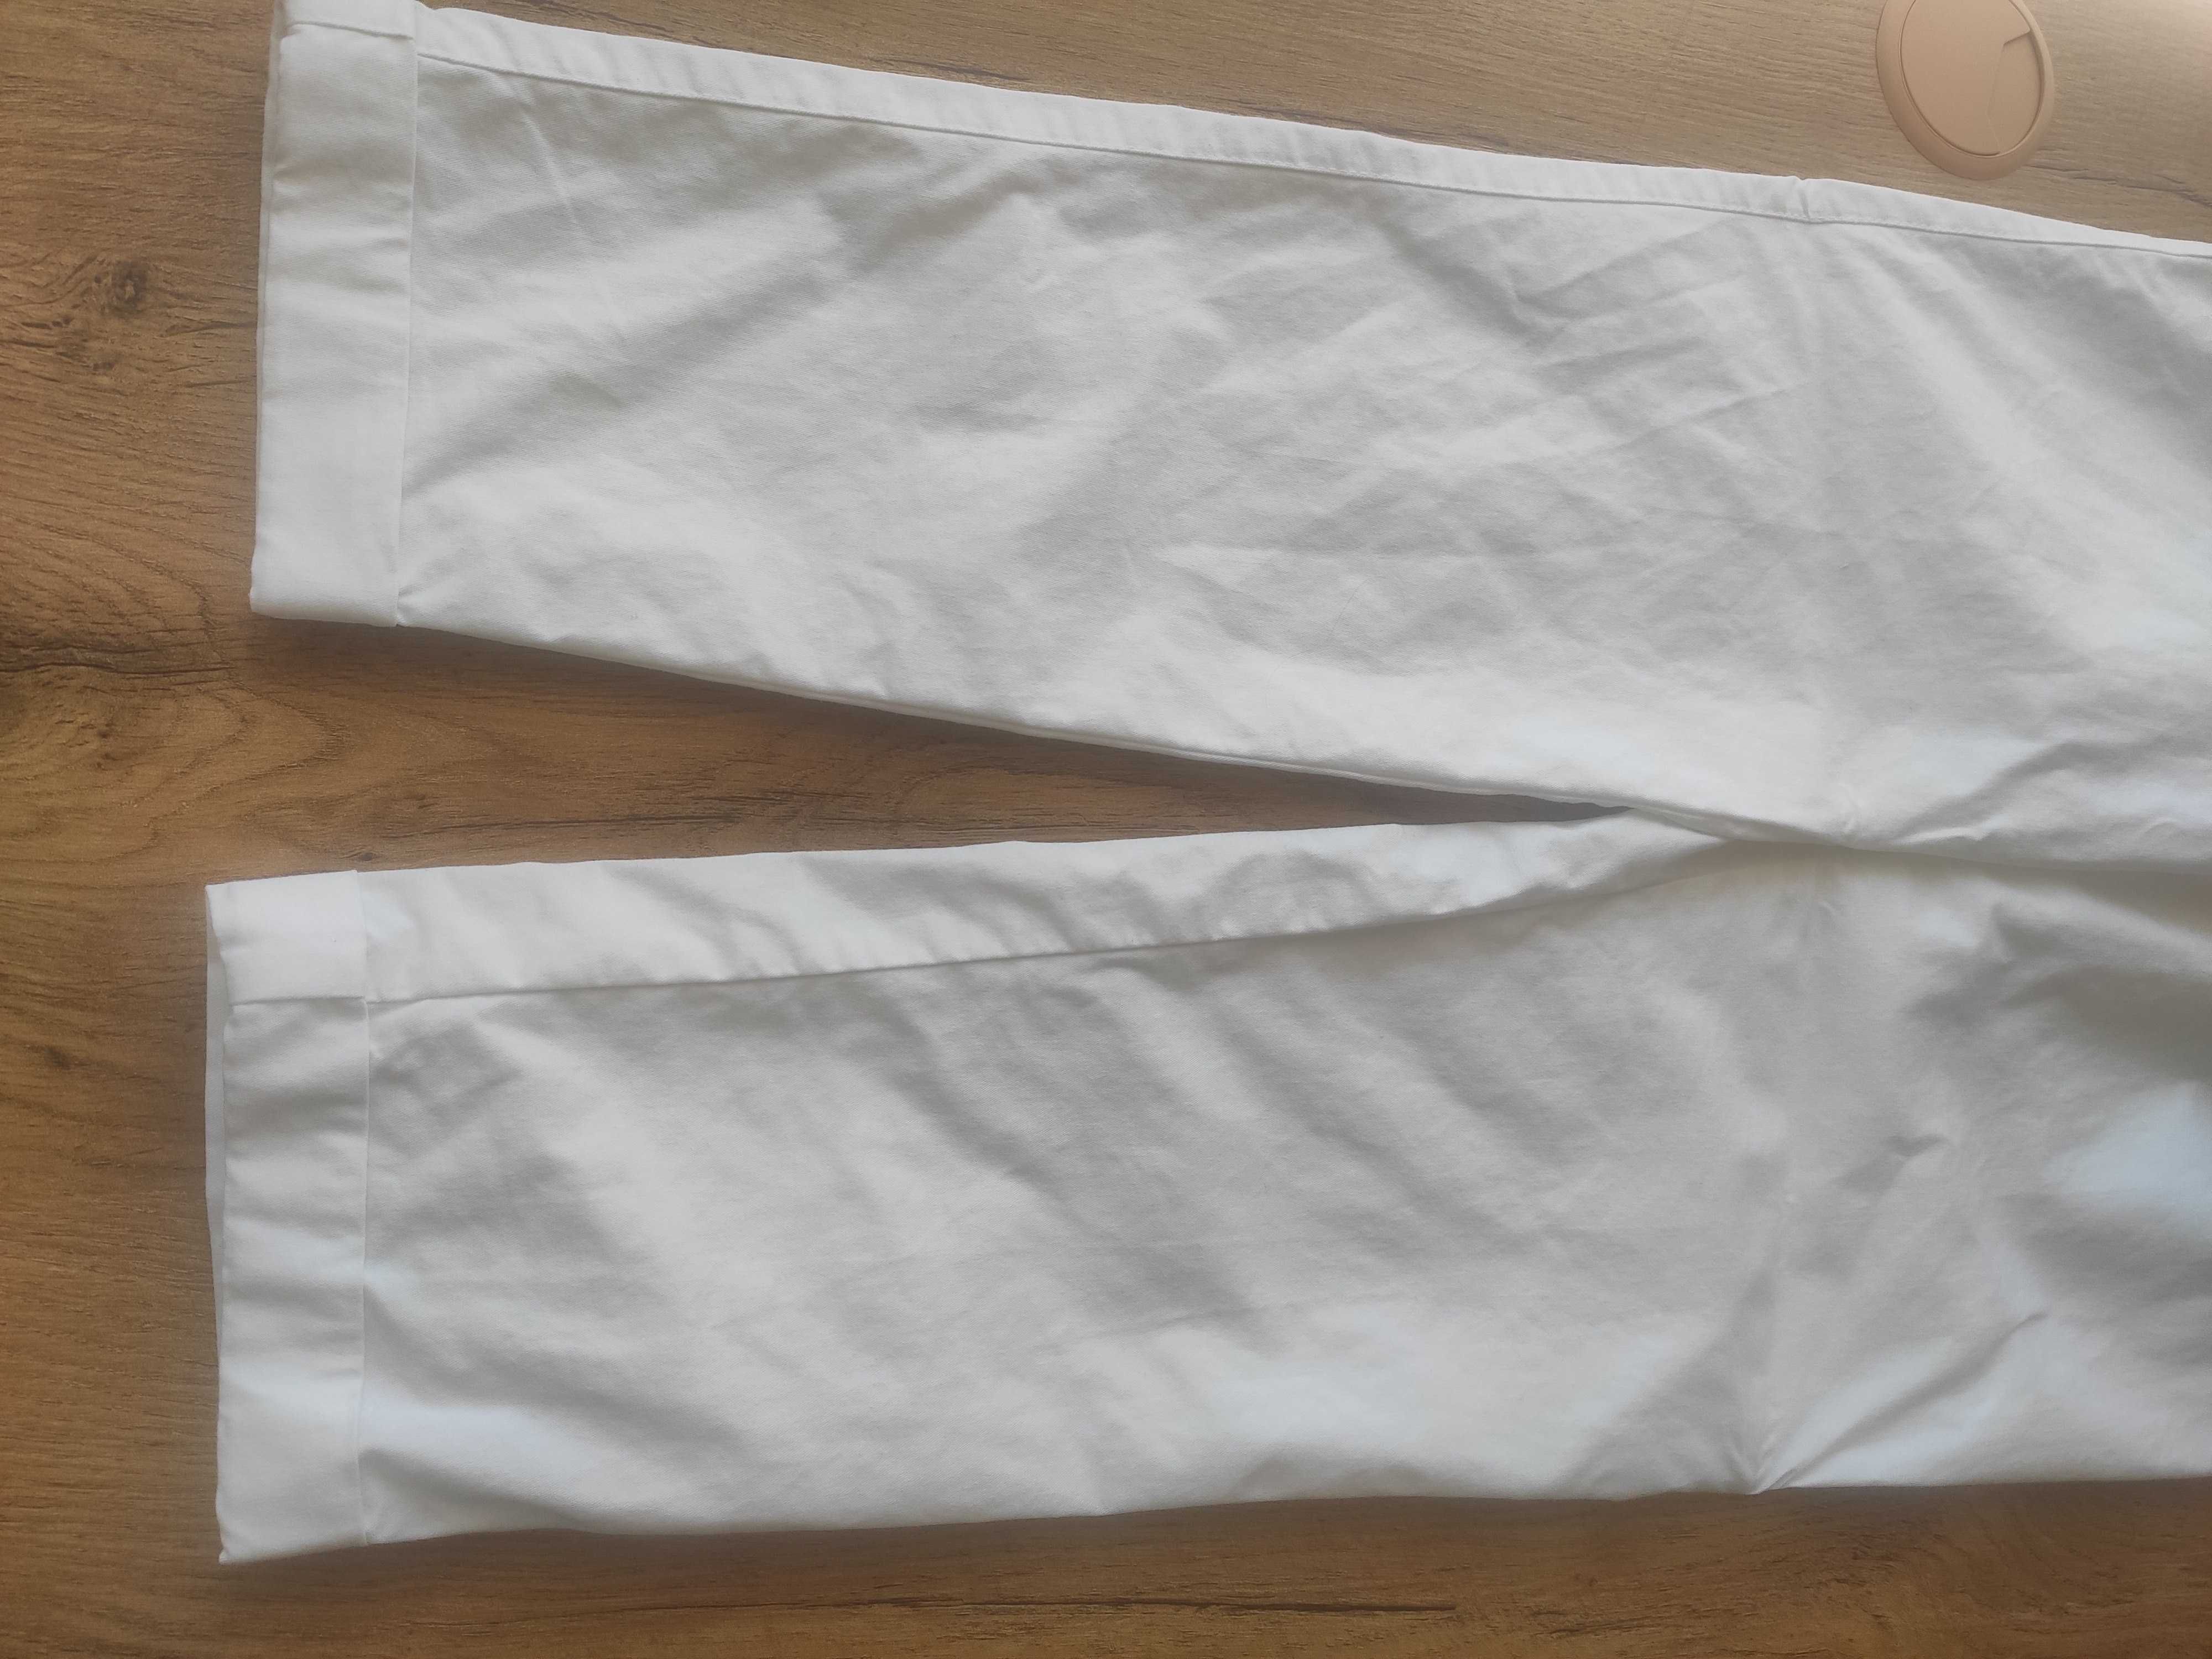 Damskie białe spodnie, rozmiar 34